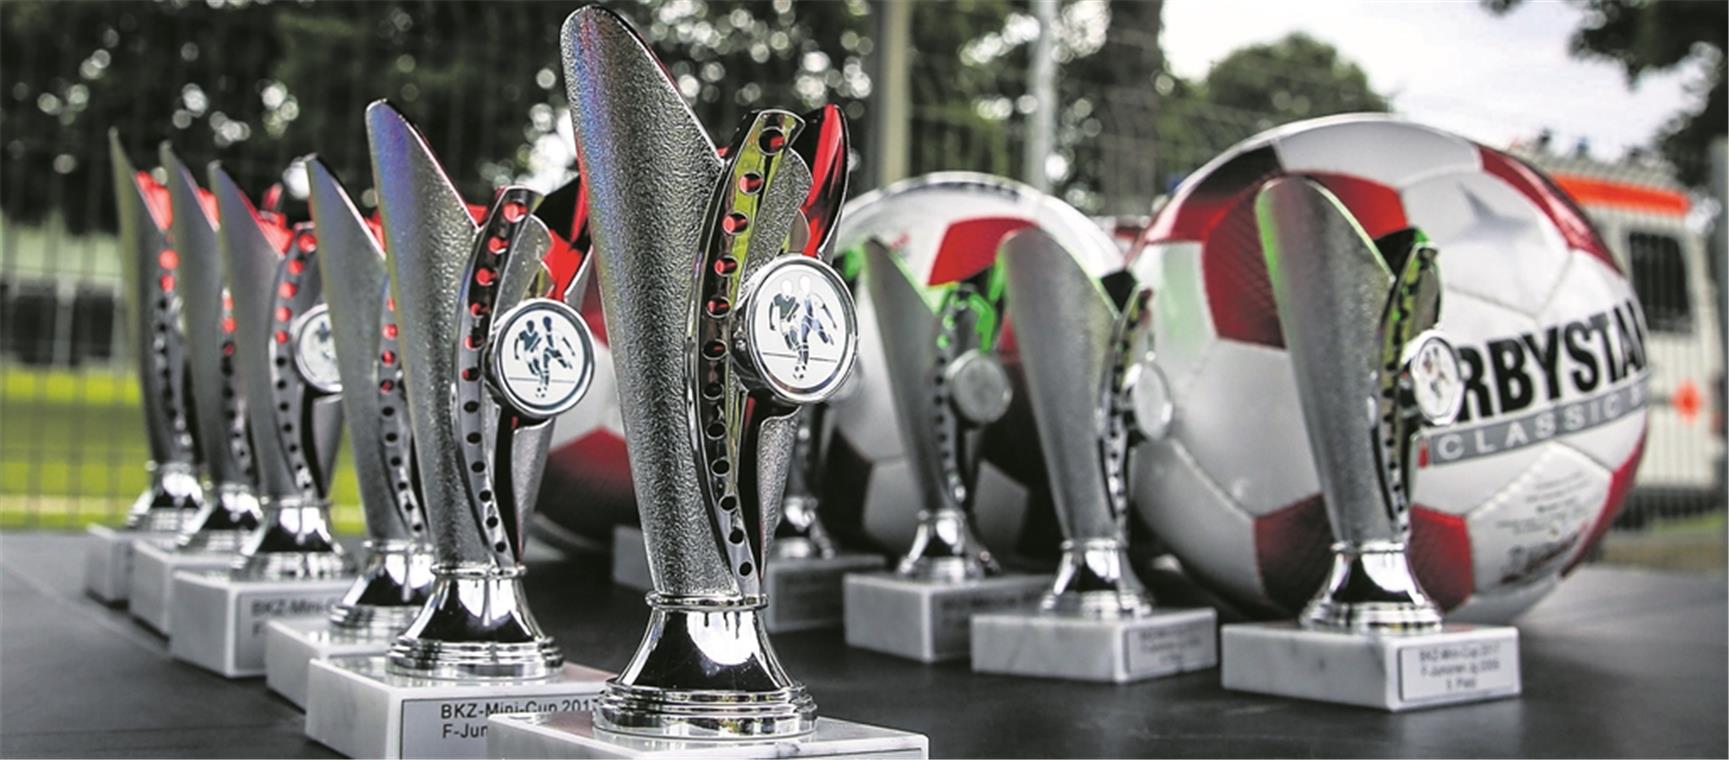 Im Mittelpunkt des zweitägigen BKZ-Mini-Cups für rund 500 Jungen und Mädchen: Der Fußball und die Siegerpokale, um die beim SV Allmersbach in vier Altersklassen gekämpft wird. Foto: A. Becher